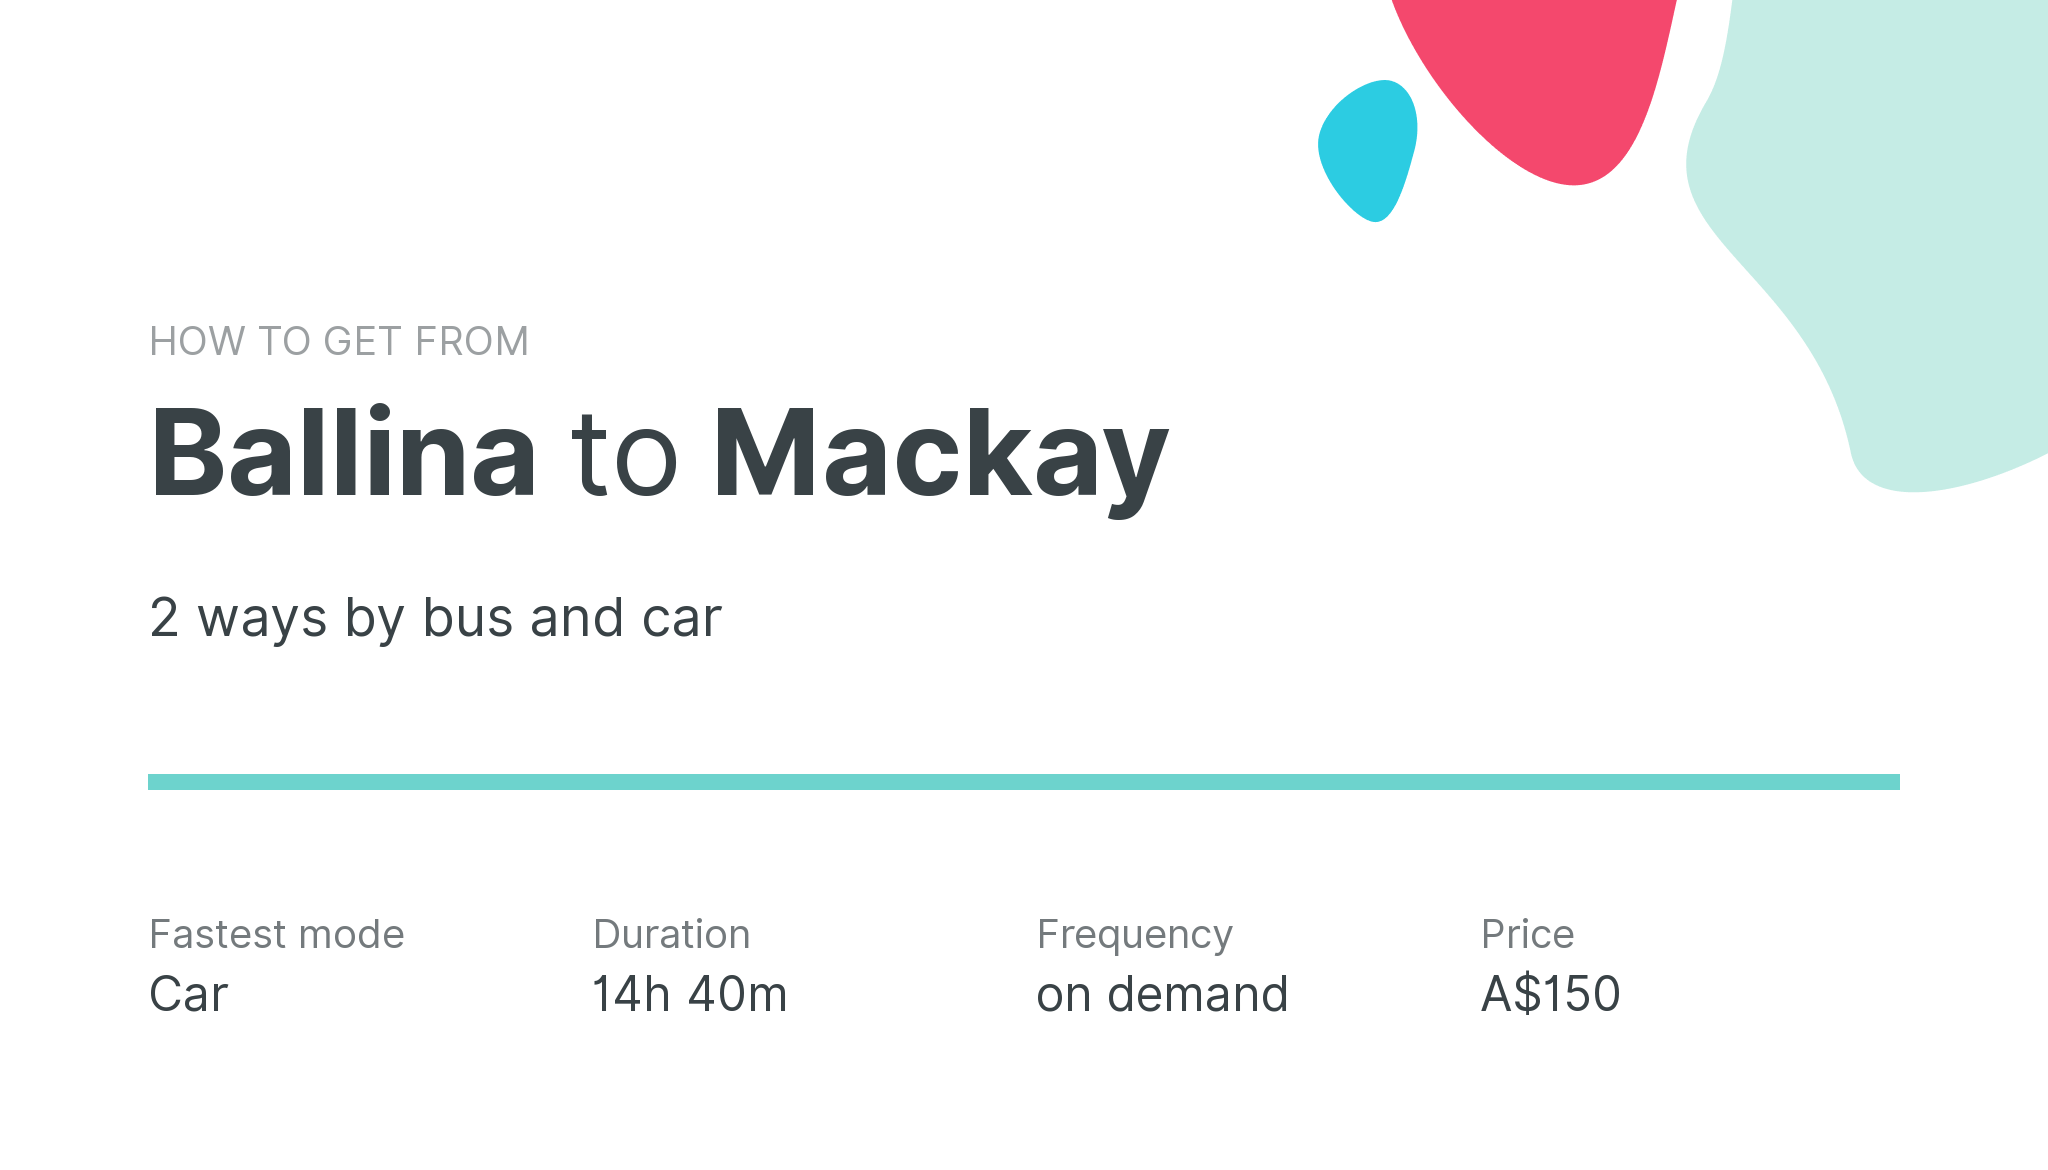 How do I get from Ballina to Mackay